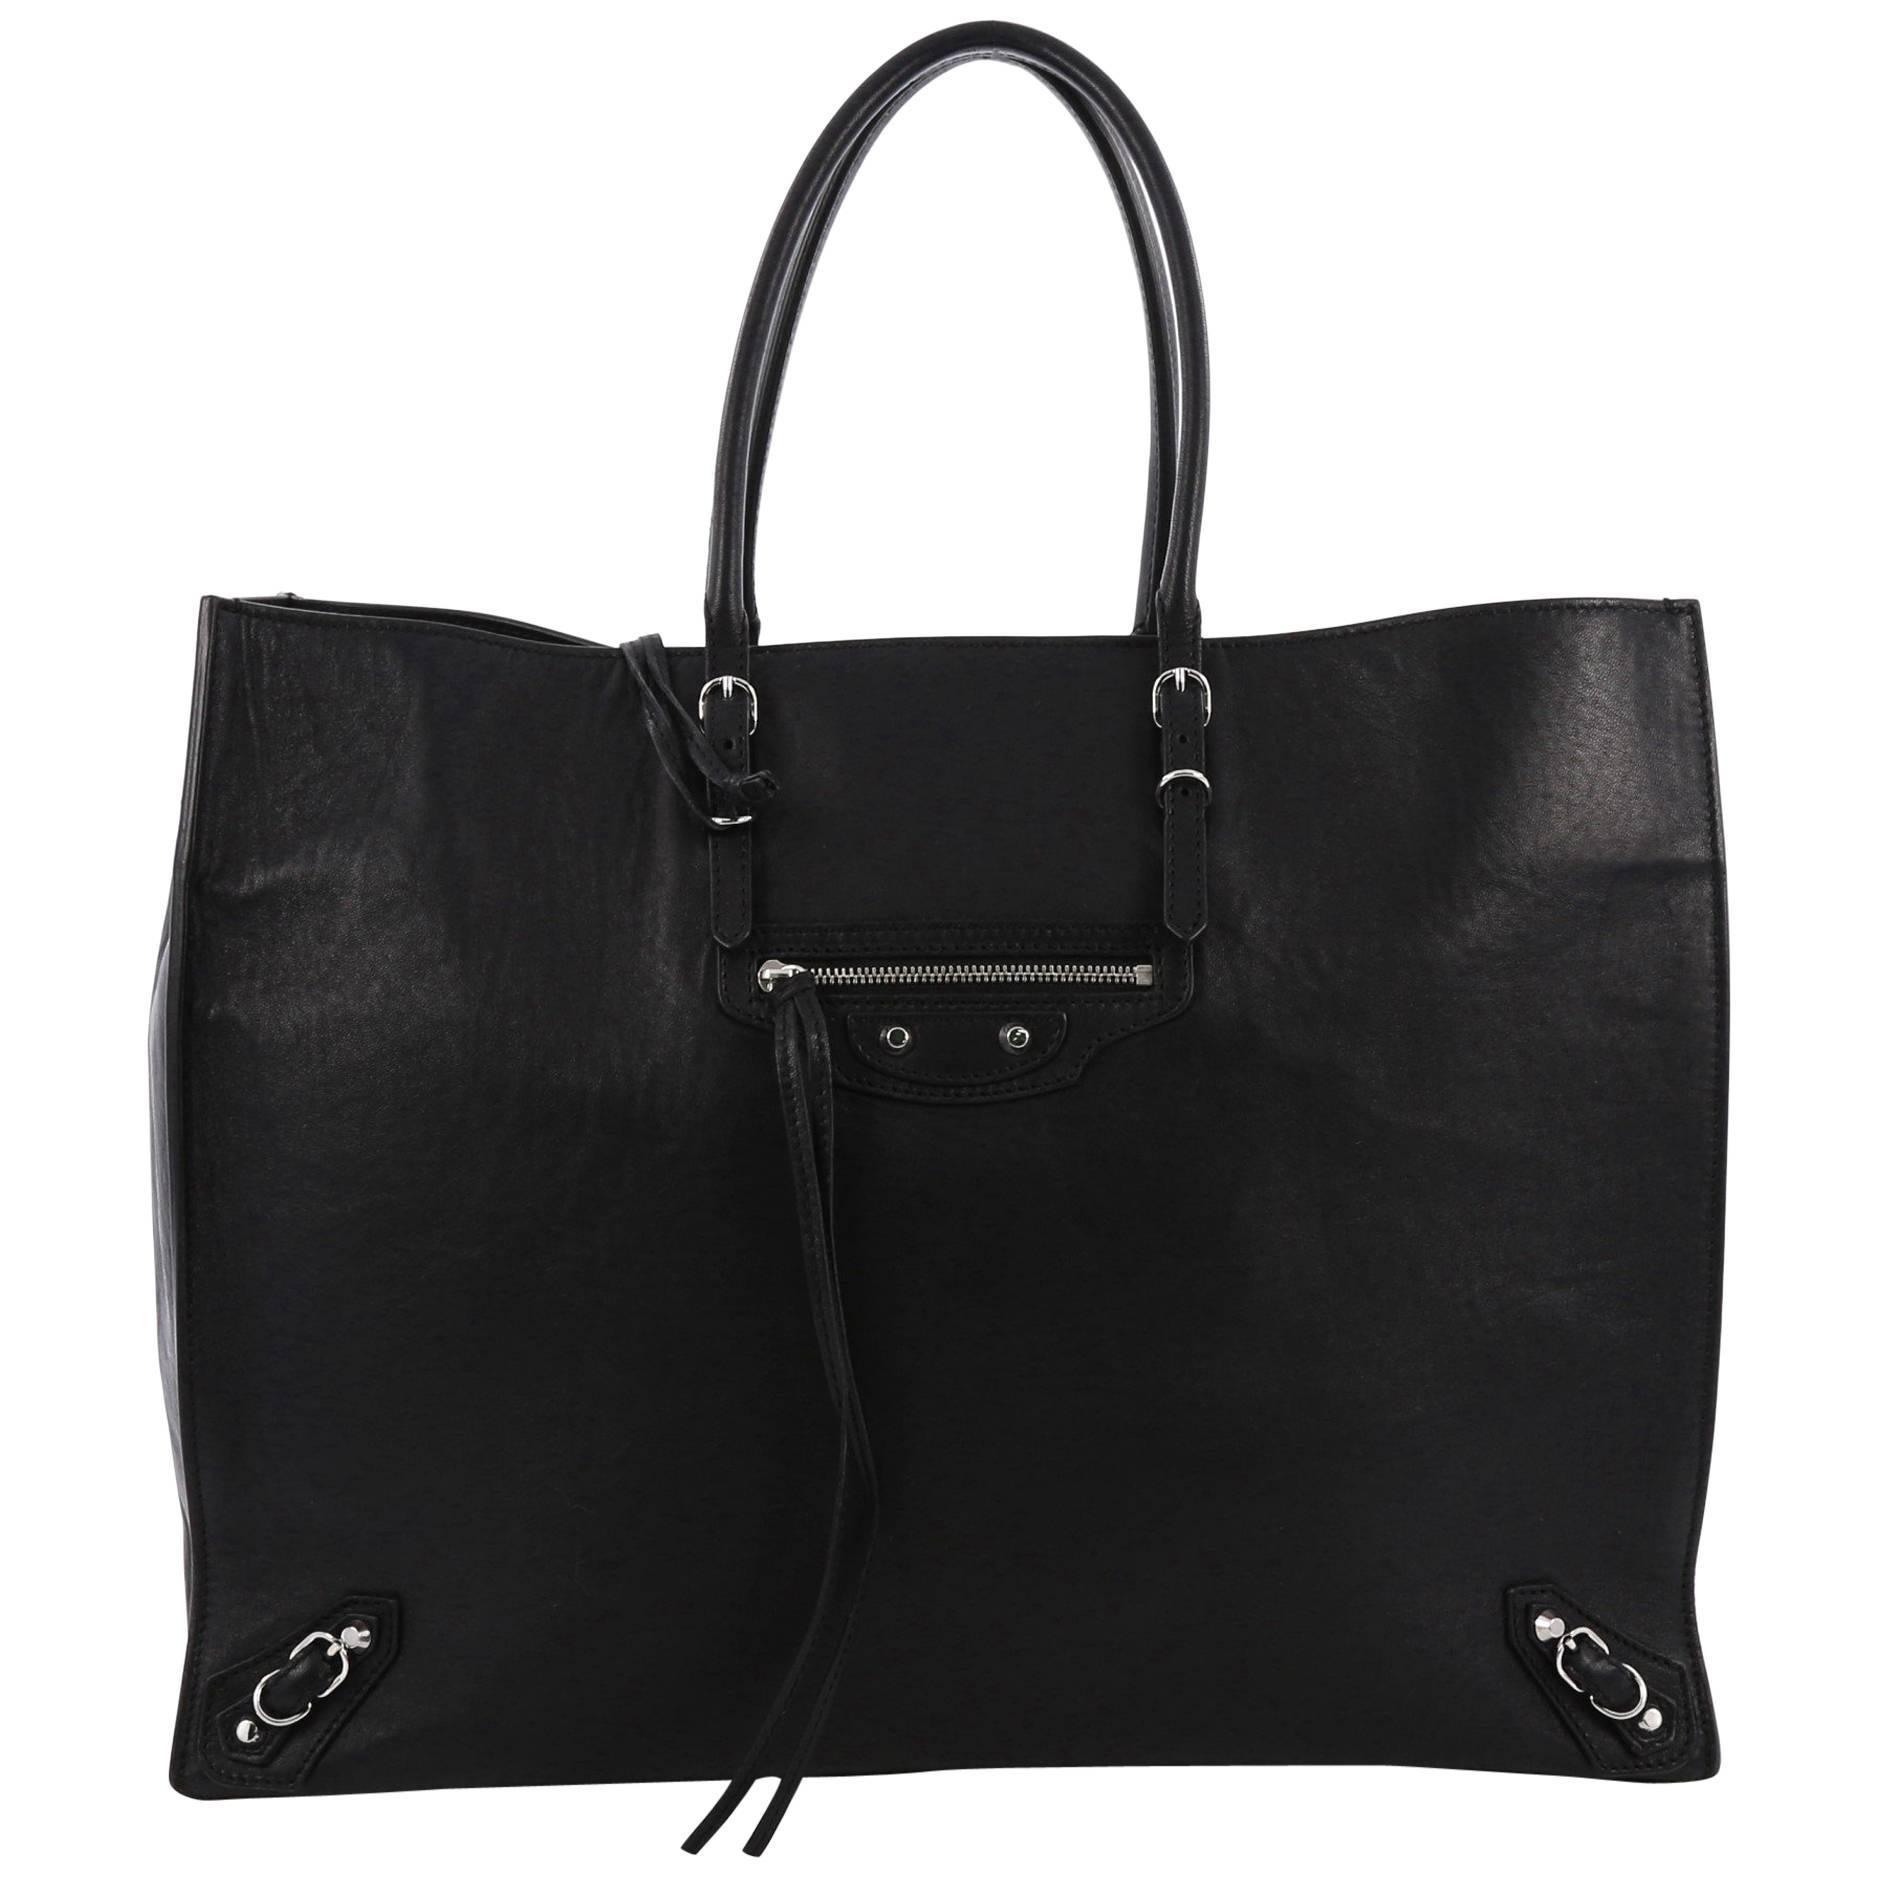 Balenciaga Papier A4 Classic Studs Handbag Leather Medium